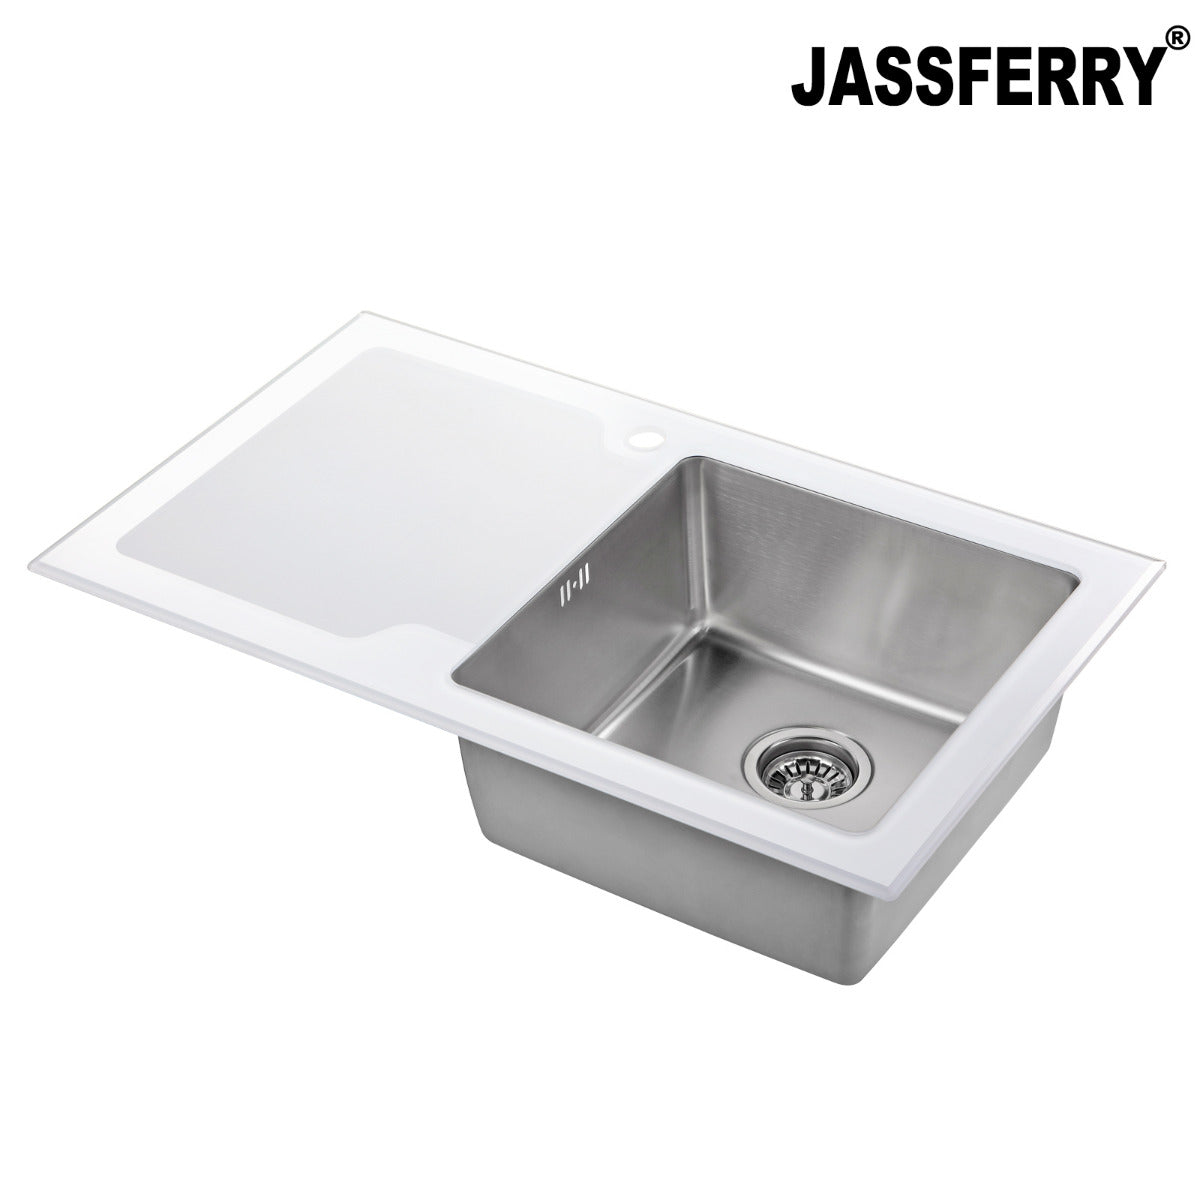 JassferryJASSFERRY White Glass Top Kitchen Sink 1 Stainless Steel Bowl Lefthand DrainerKitchen Sinks